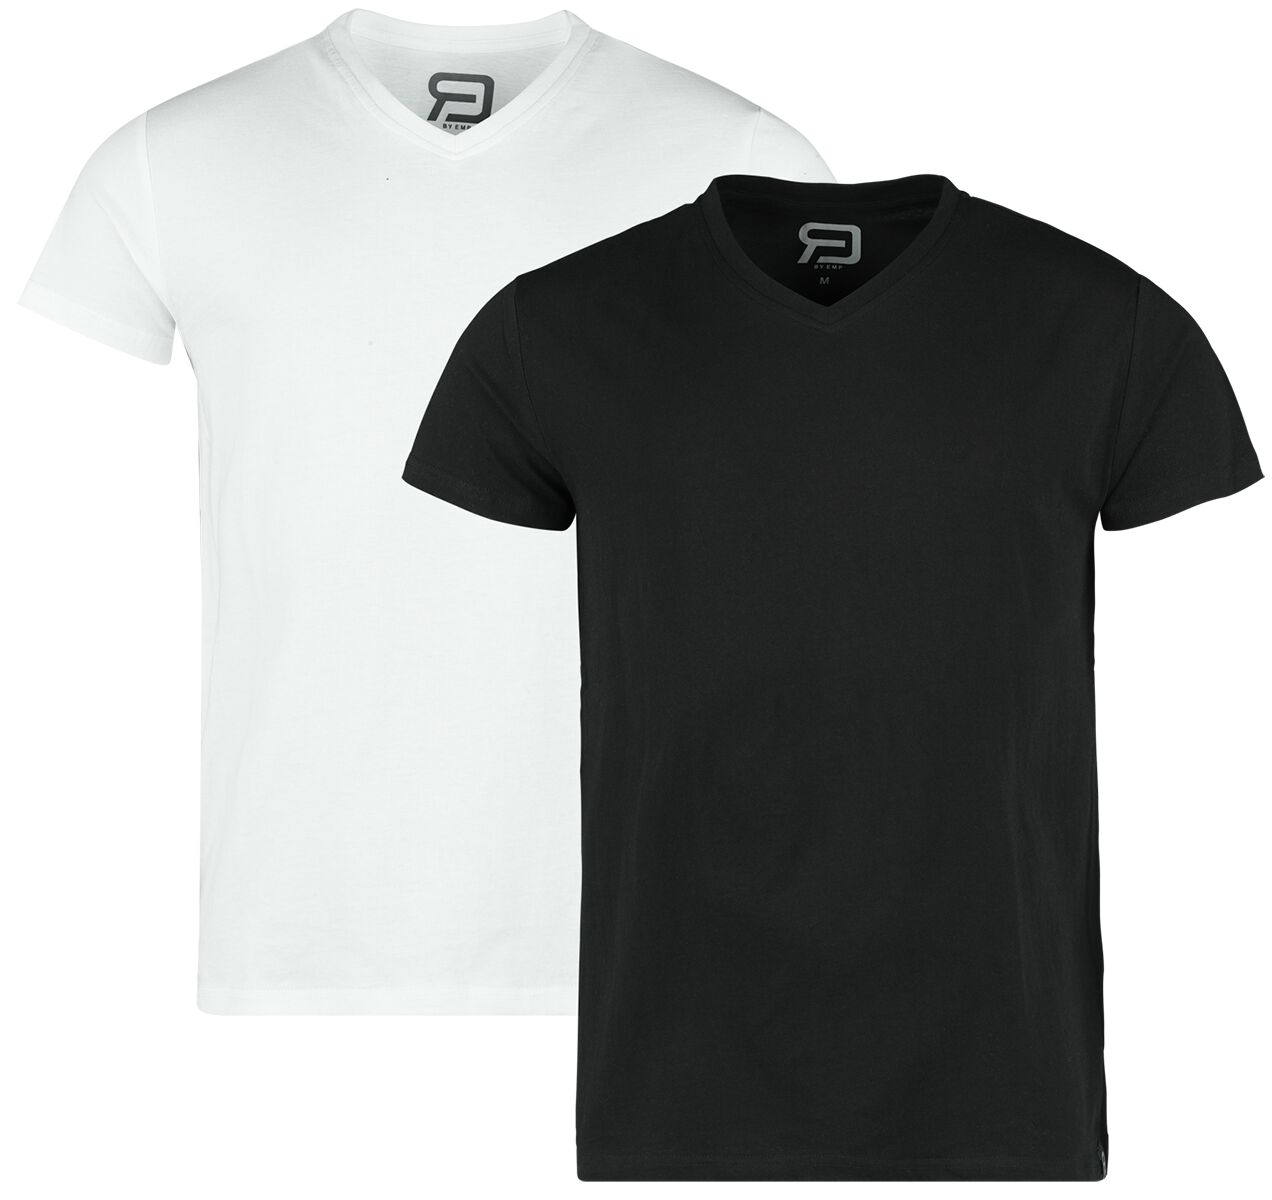 T-Shirt für Männer  schwarz/weiß Double Pack T-Shirts von RED by EMP